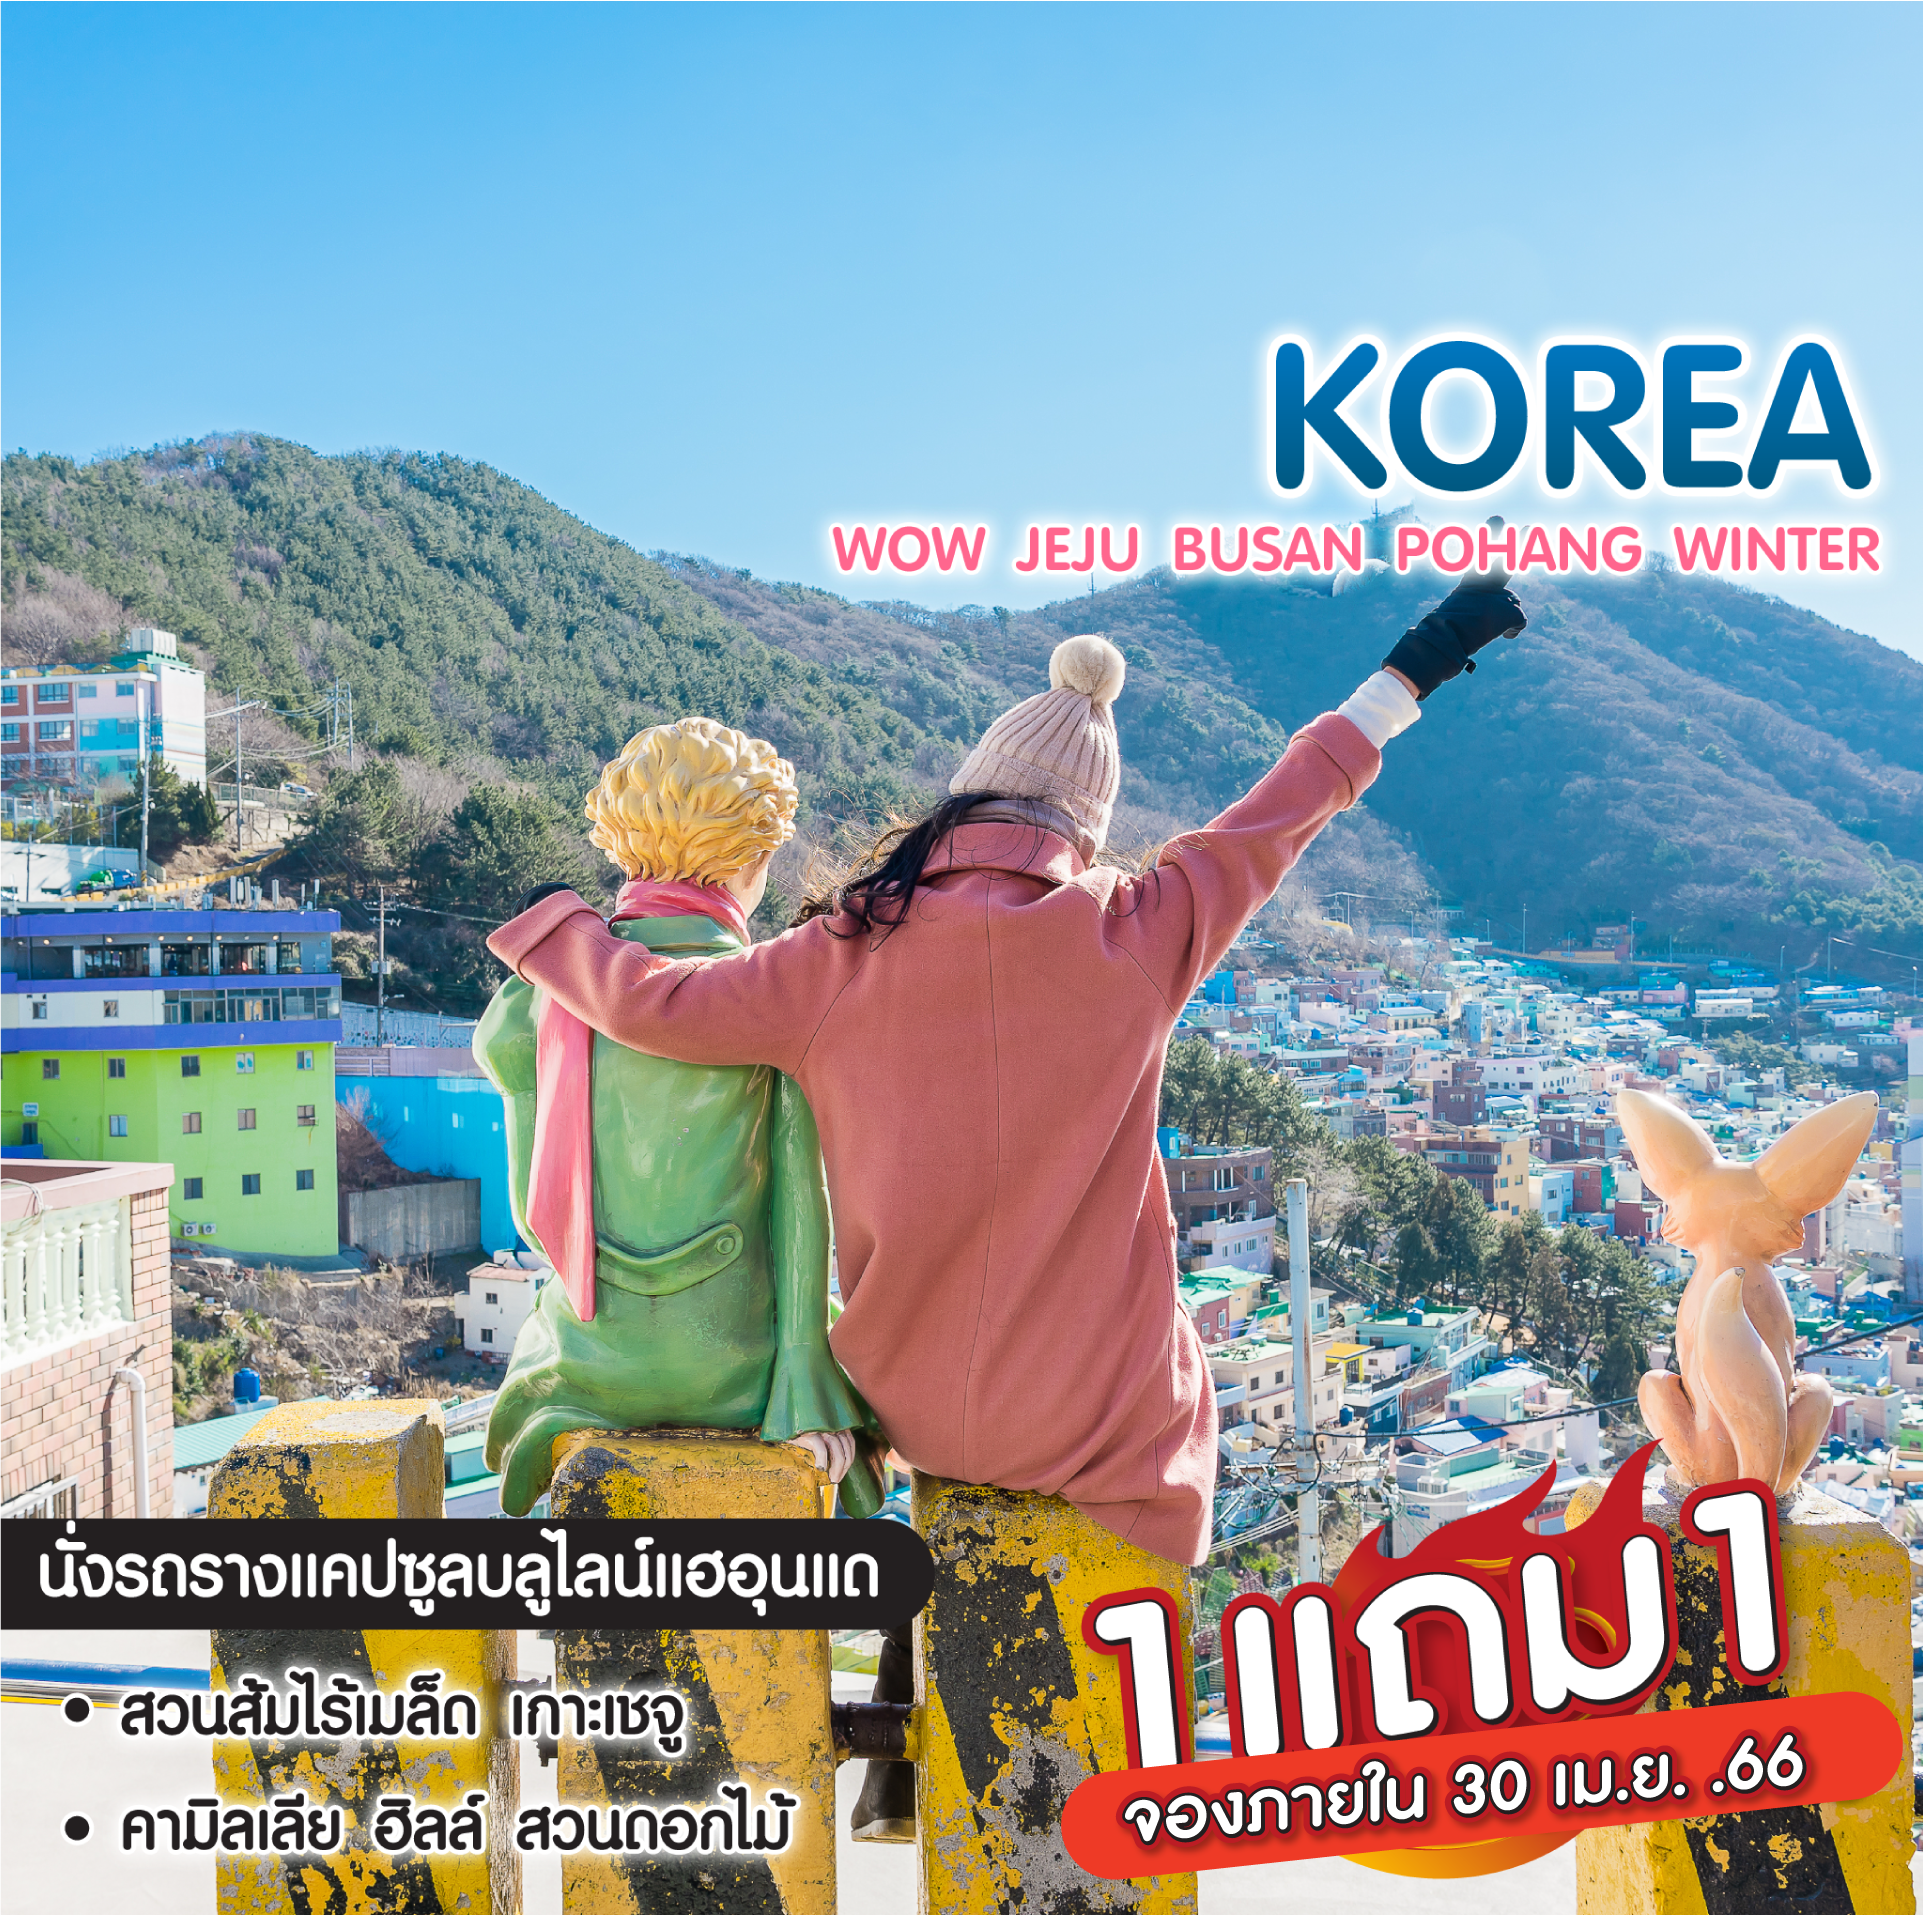 ทัวร์เกาหลี ️Wow Jeju Busan Pohang Spring เที่ยว 3 เมืองสุดคุ้ม